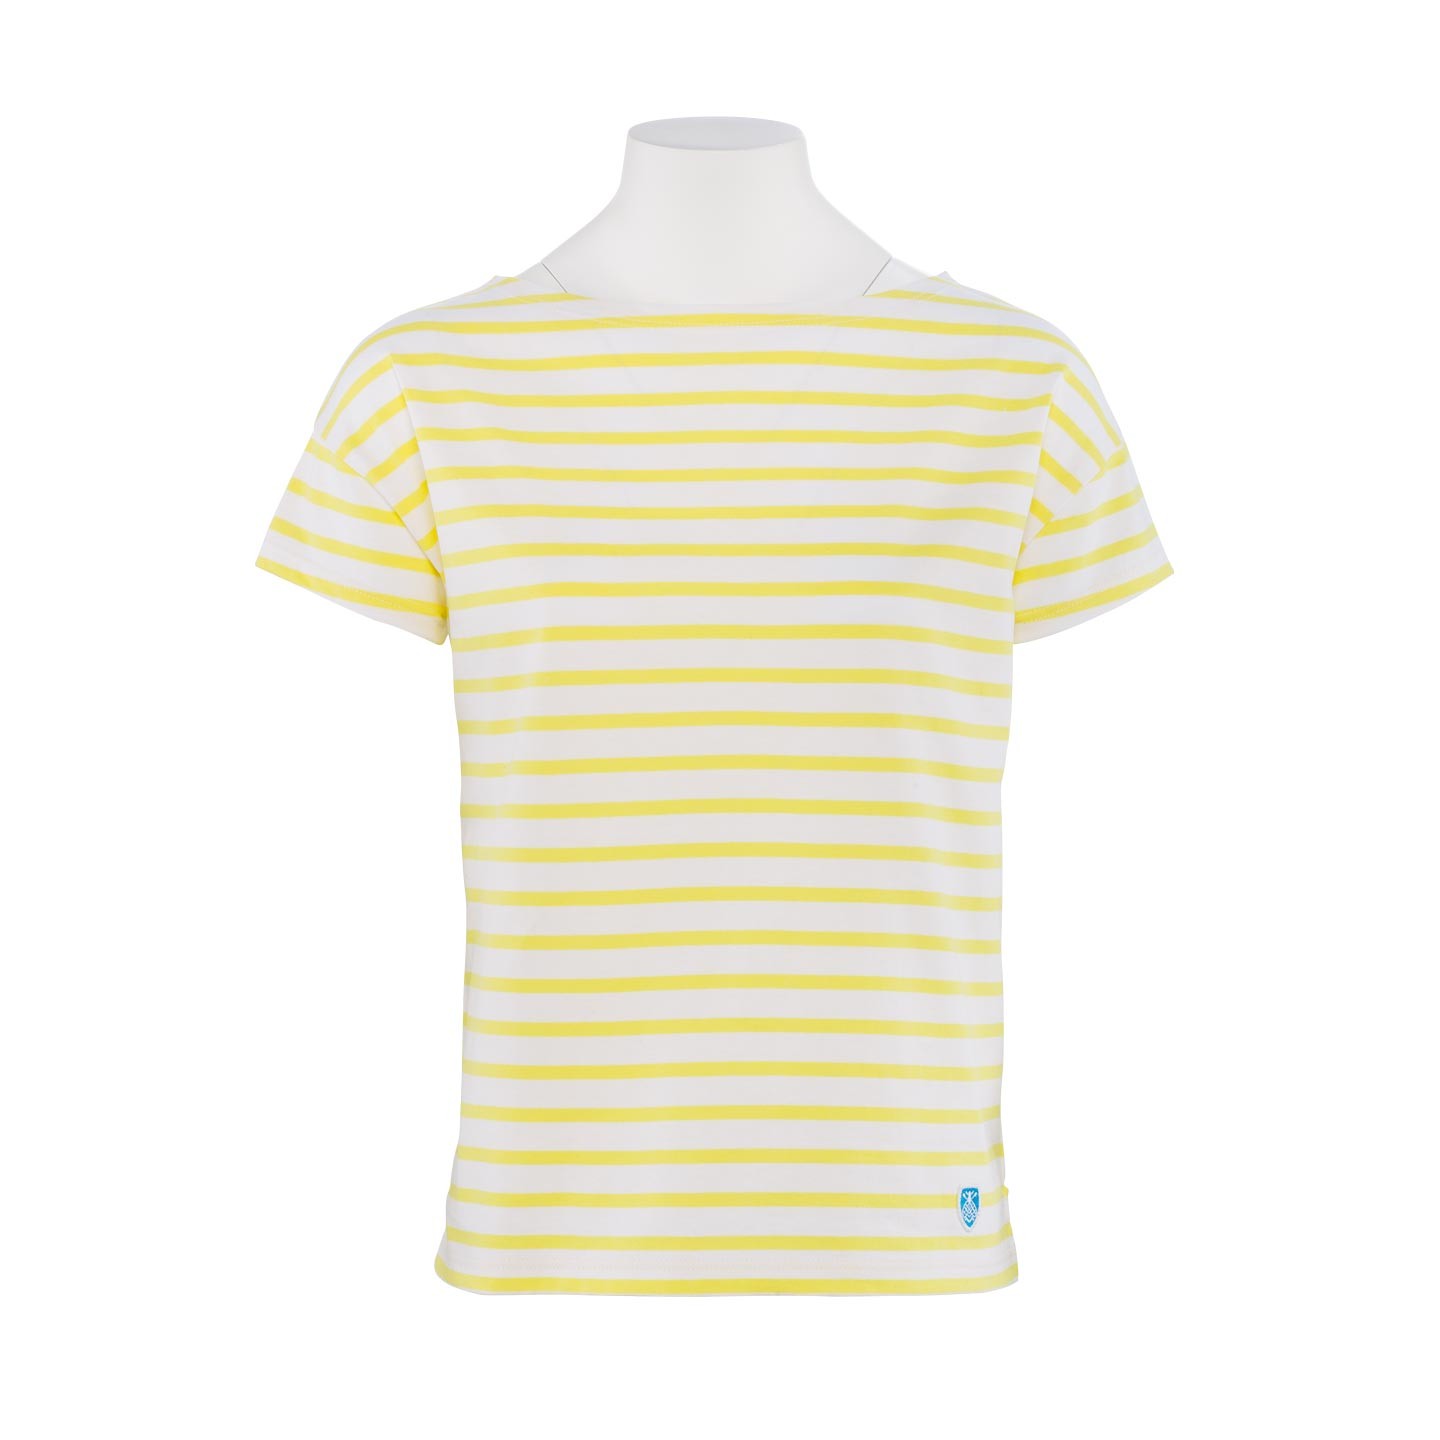 Short striped shirt White / Lemon, unisex made in France Orcival